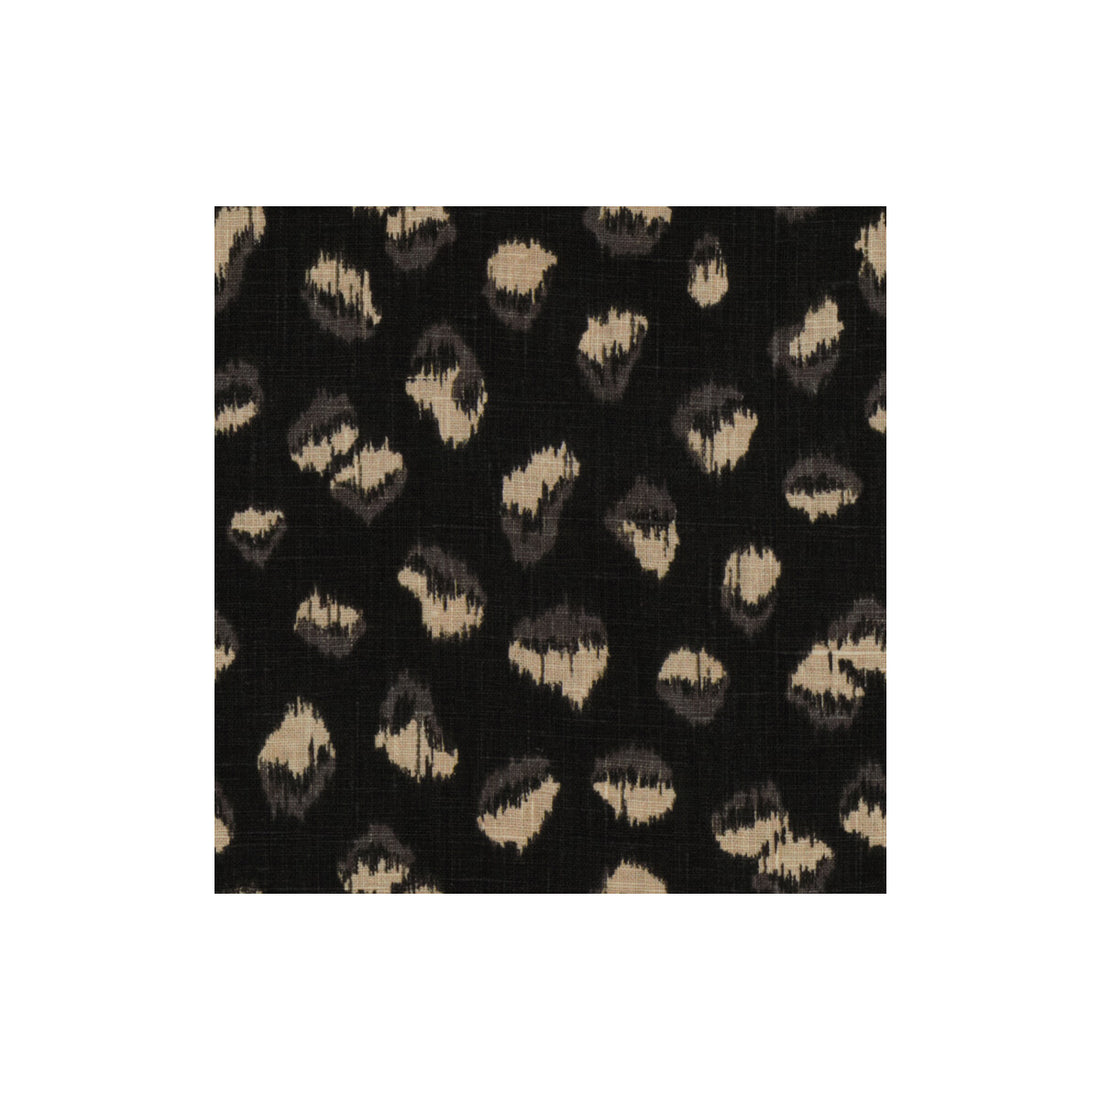 Feline fabric in ebony/beige color - pattern GWF-3106.816.0 - by Lee Jofa Modern in the Kelly Wearstler II collection